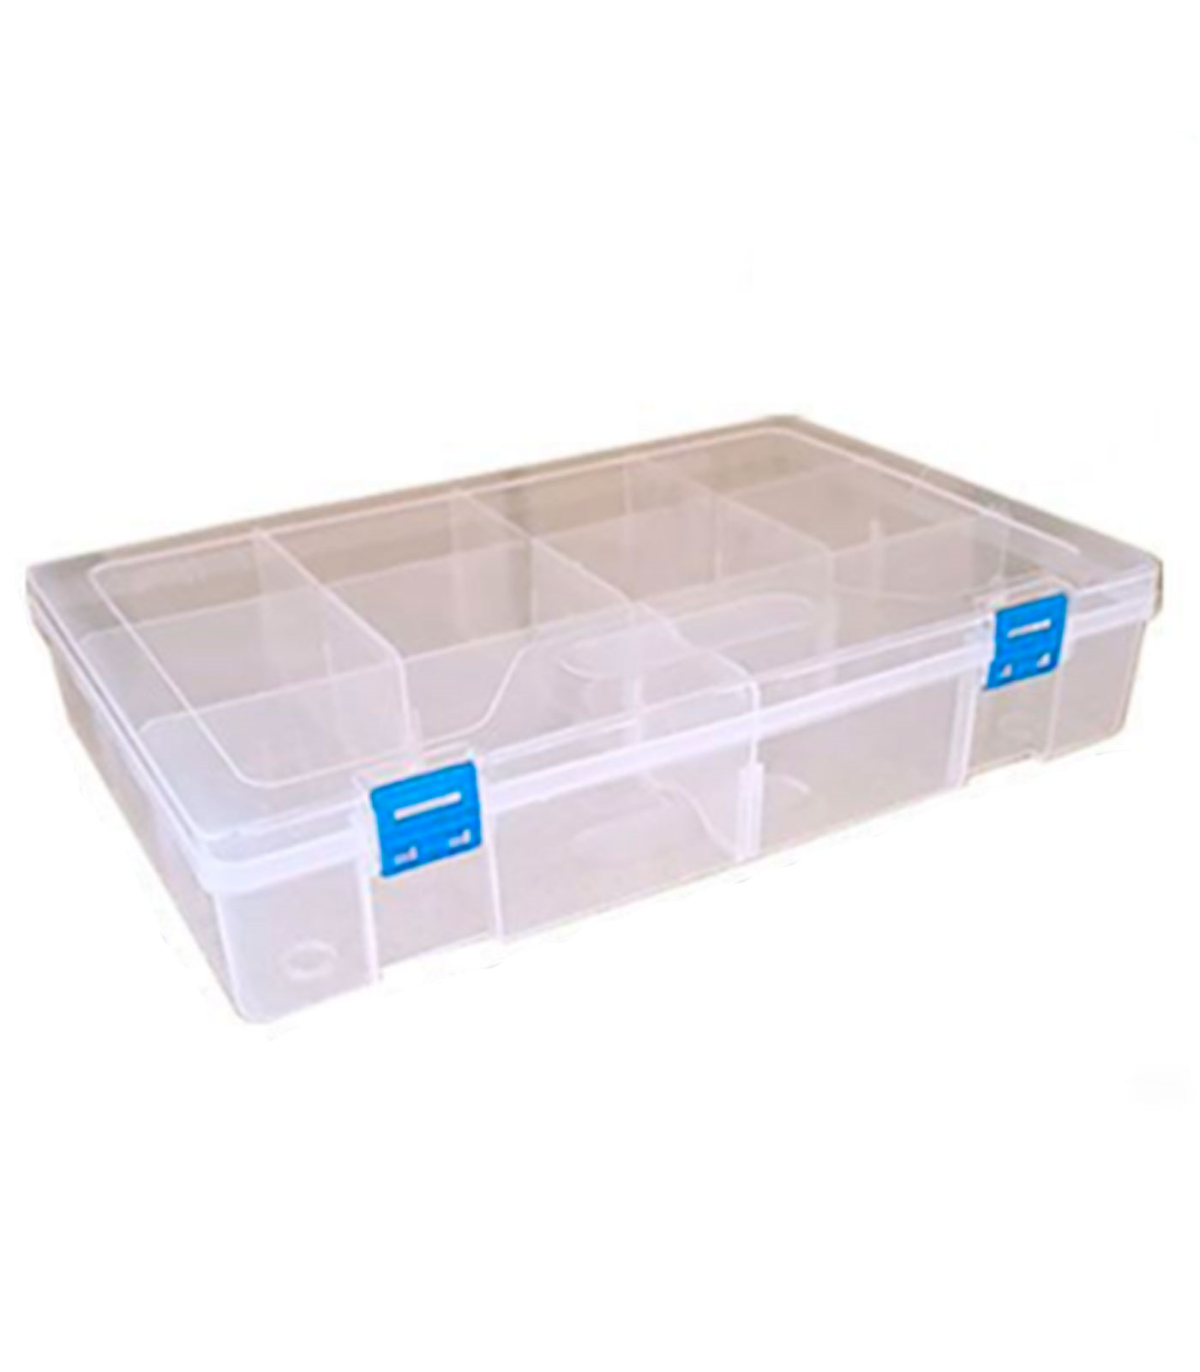 Práctica caja de almacenamiento de plástico con separadores